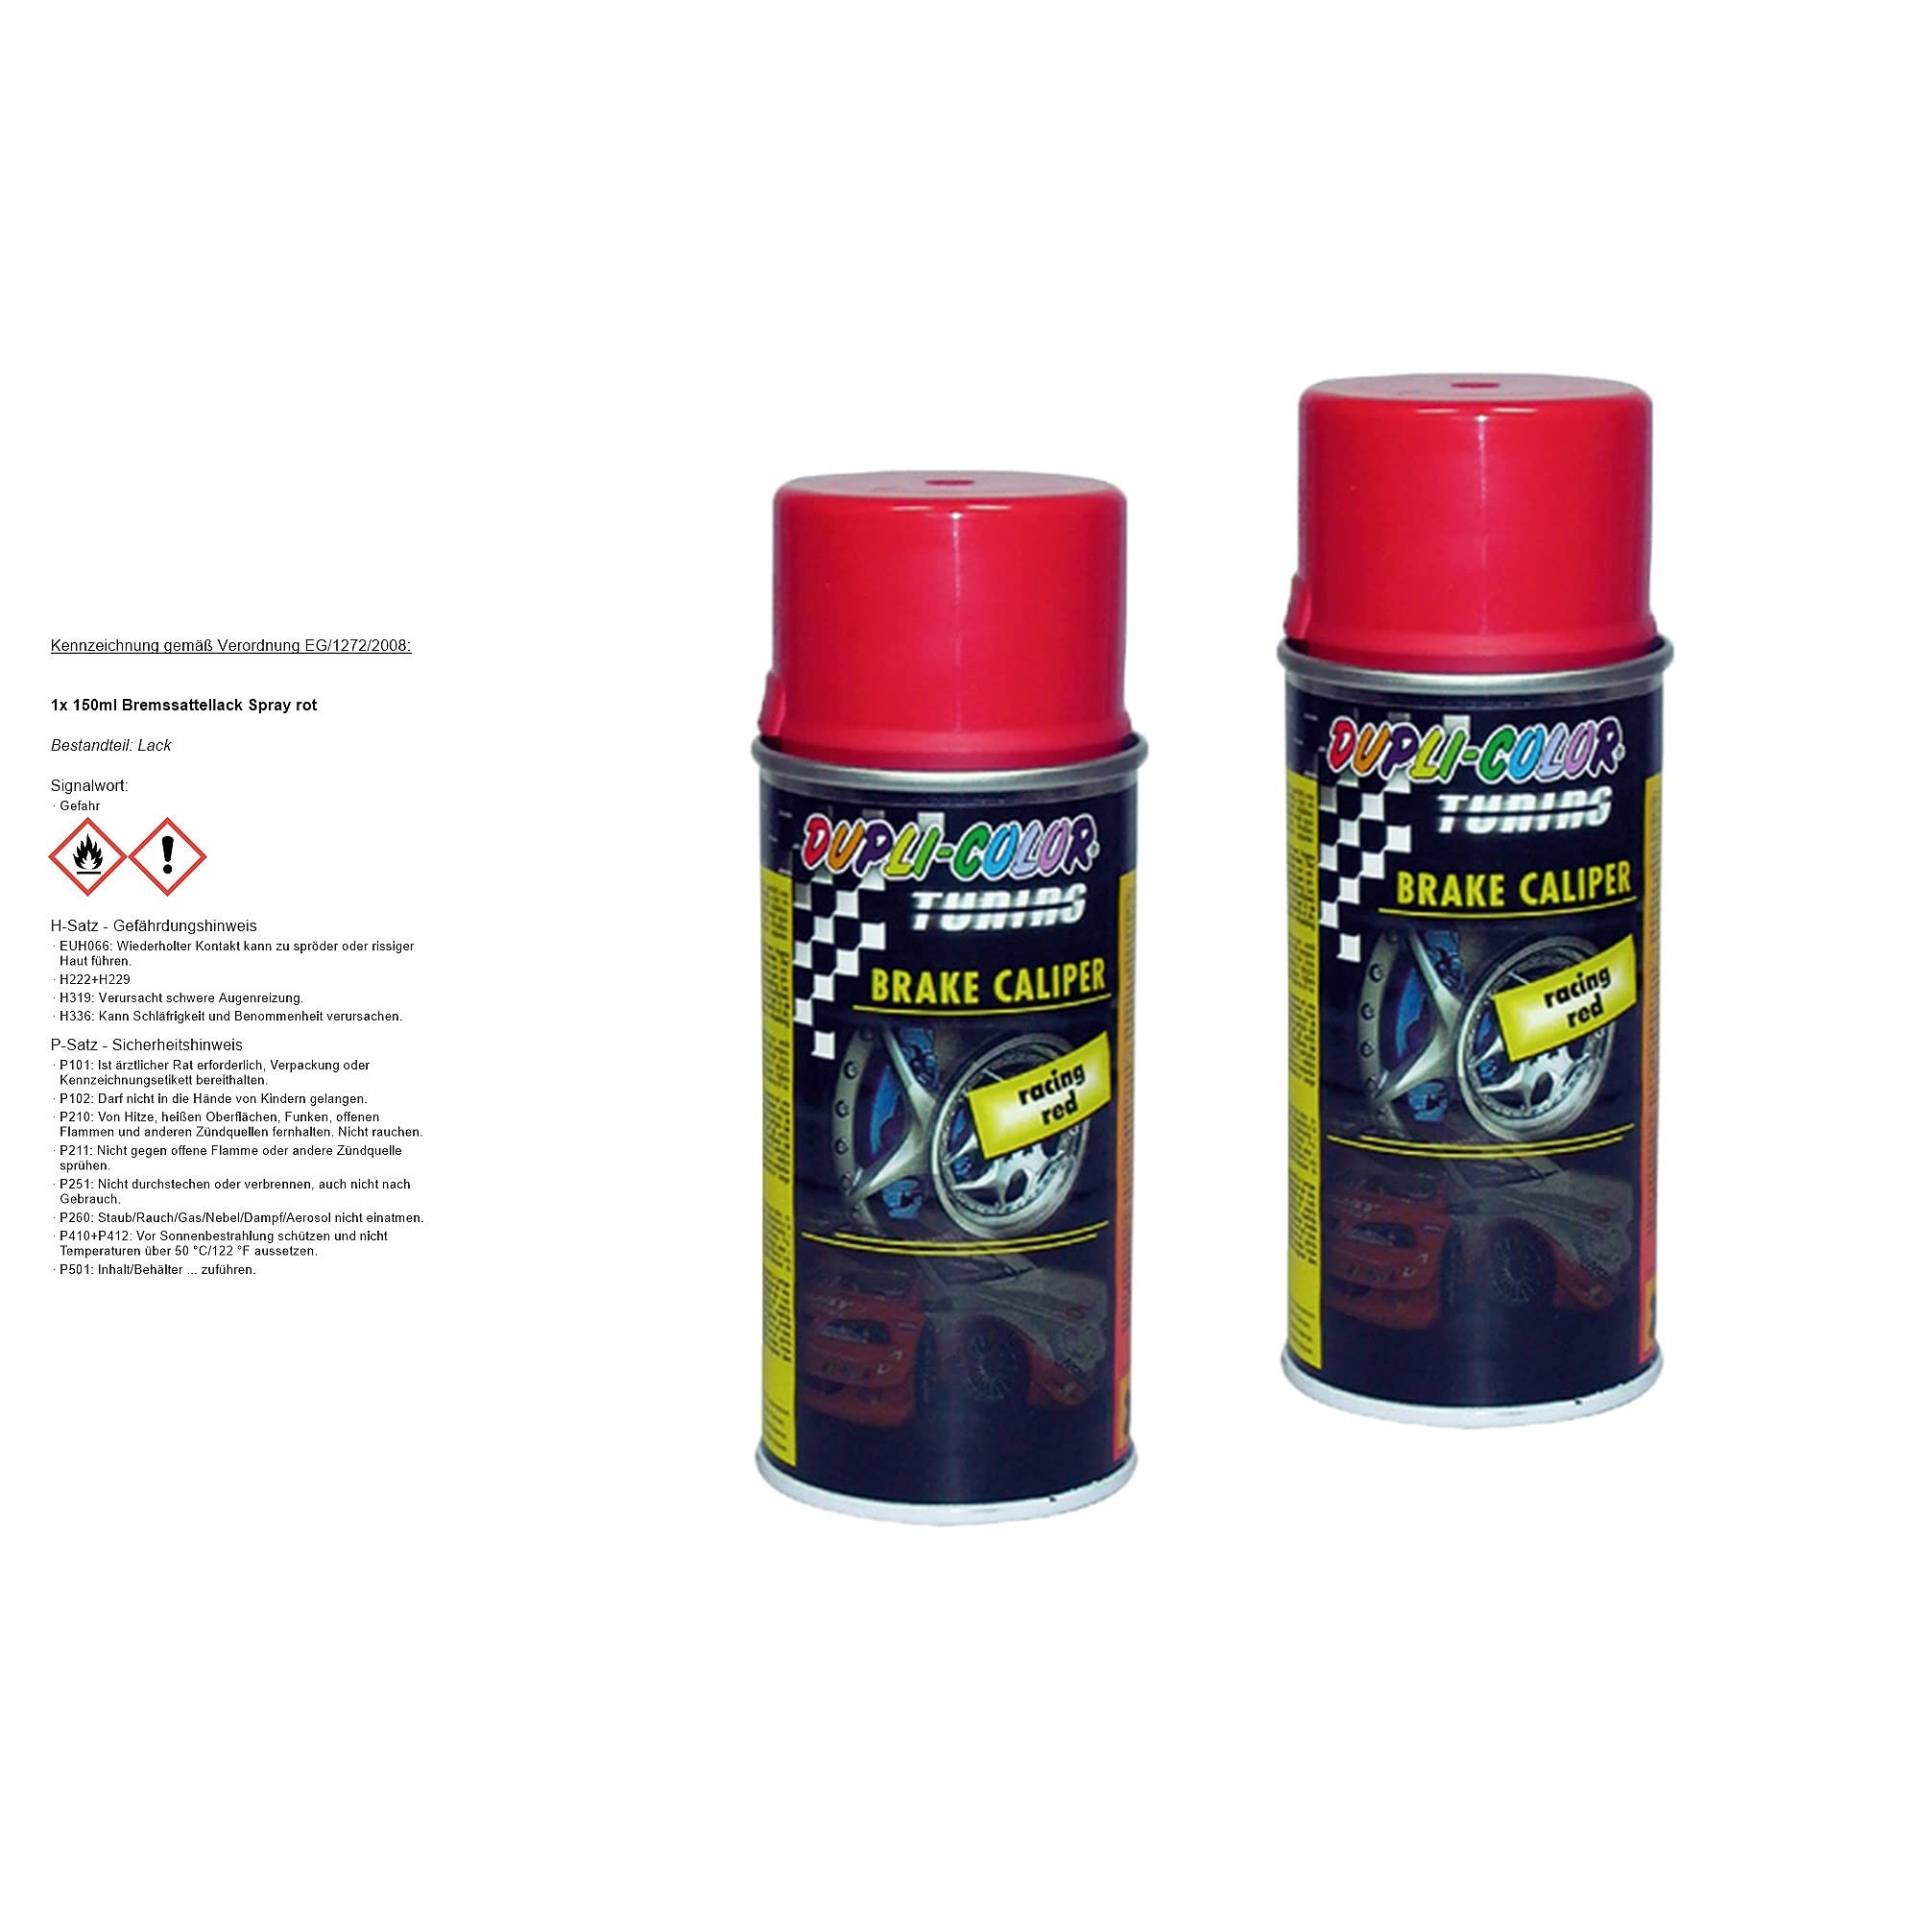 DUPLI COLOR 2x 150ml Bremssattellack Spray rot von Dupli Color